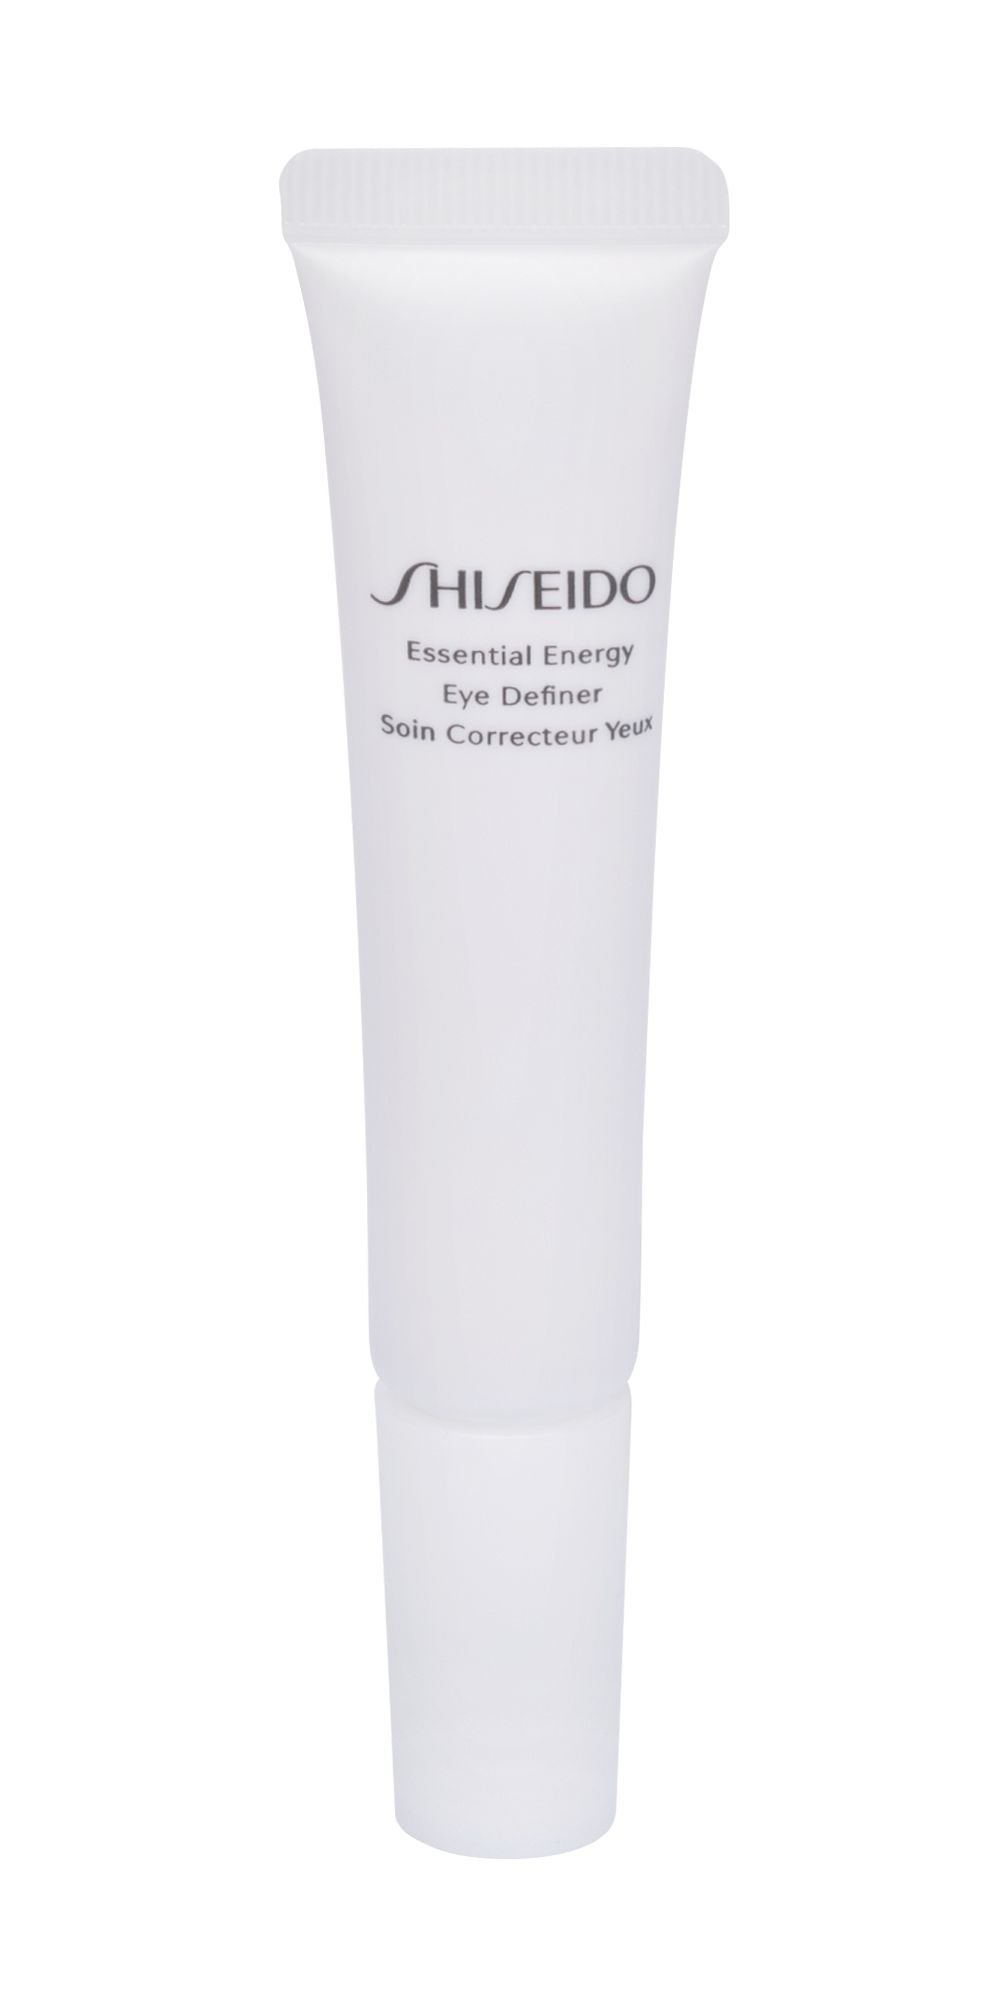 Shiseido Essential Energy paakių kremas